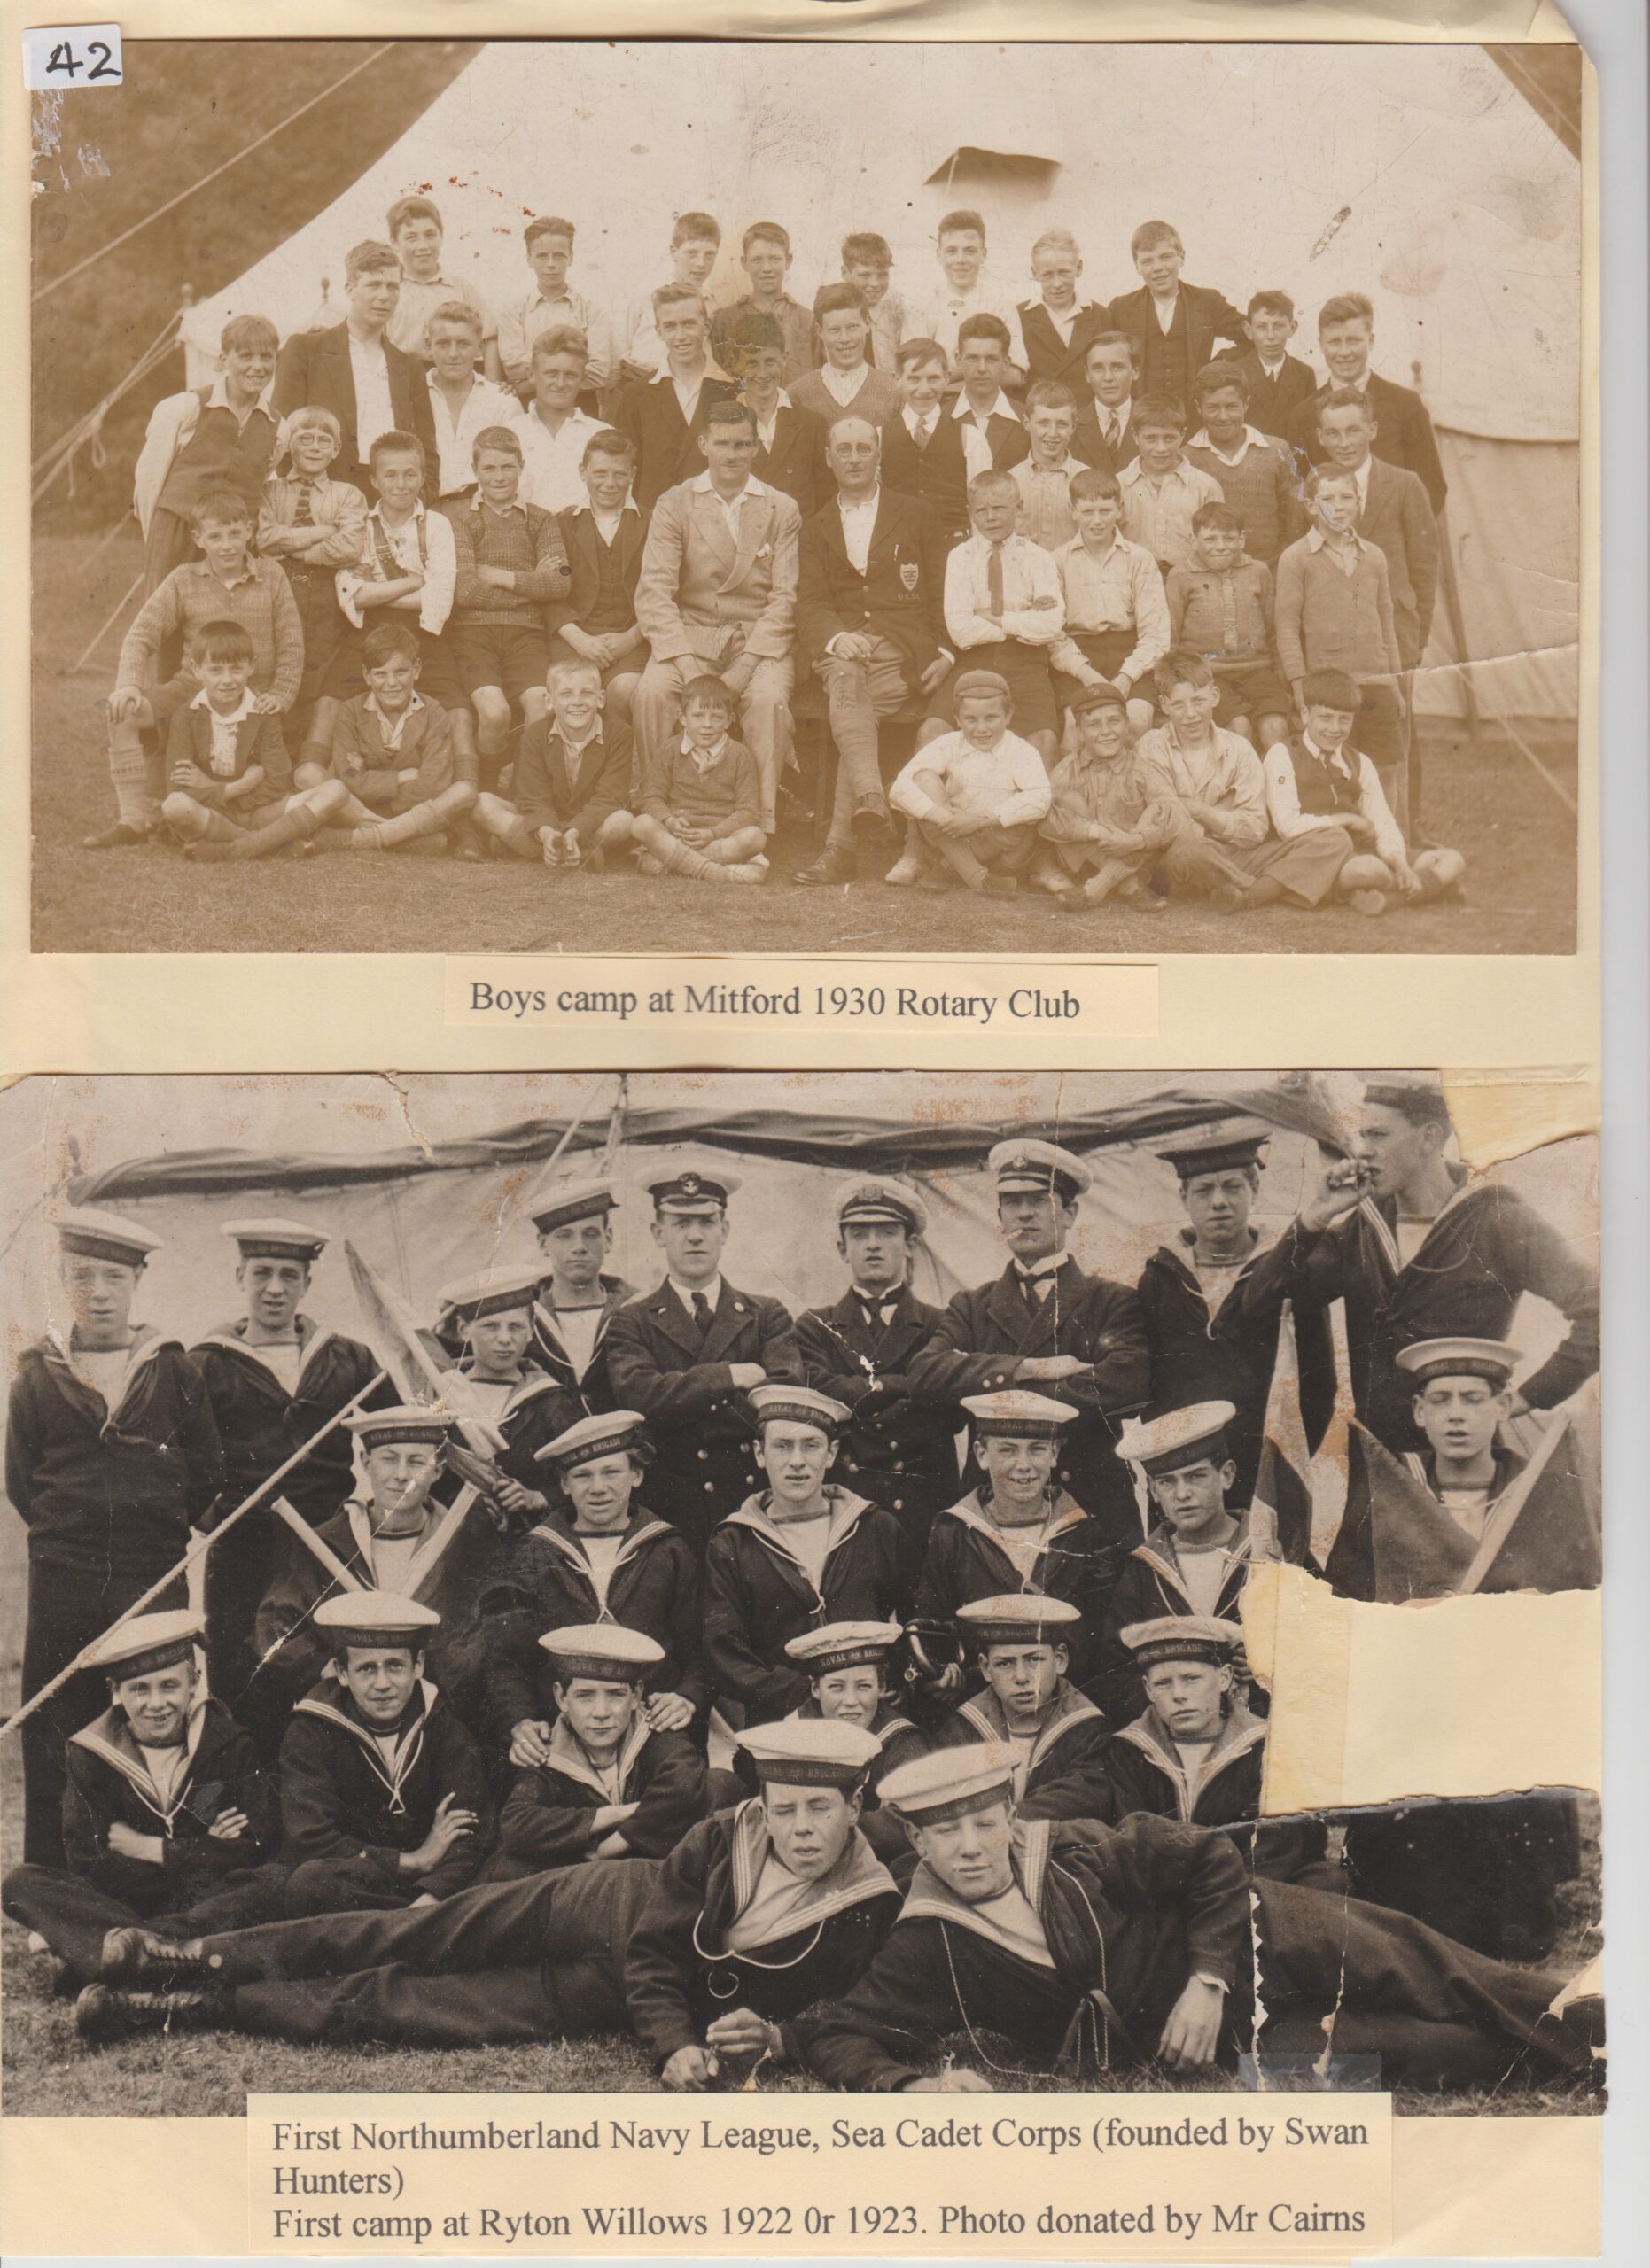 Boy_s camp at Mitford Rotary Club 1930, Sea Cadet Corps camp at Ryton Willows 1922 or 1923